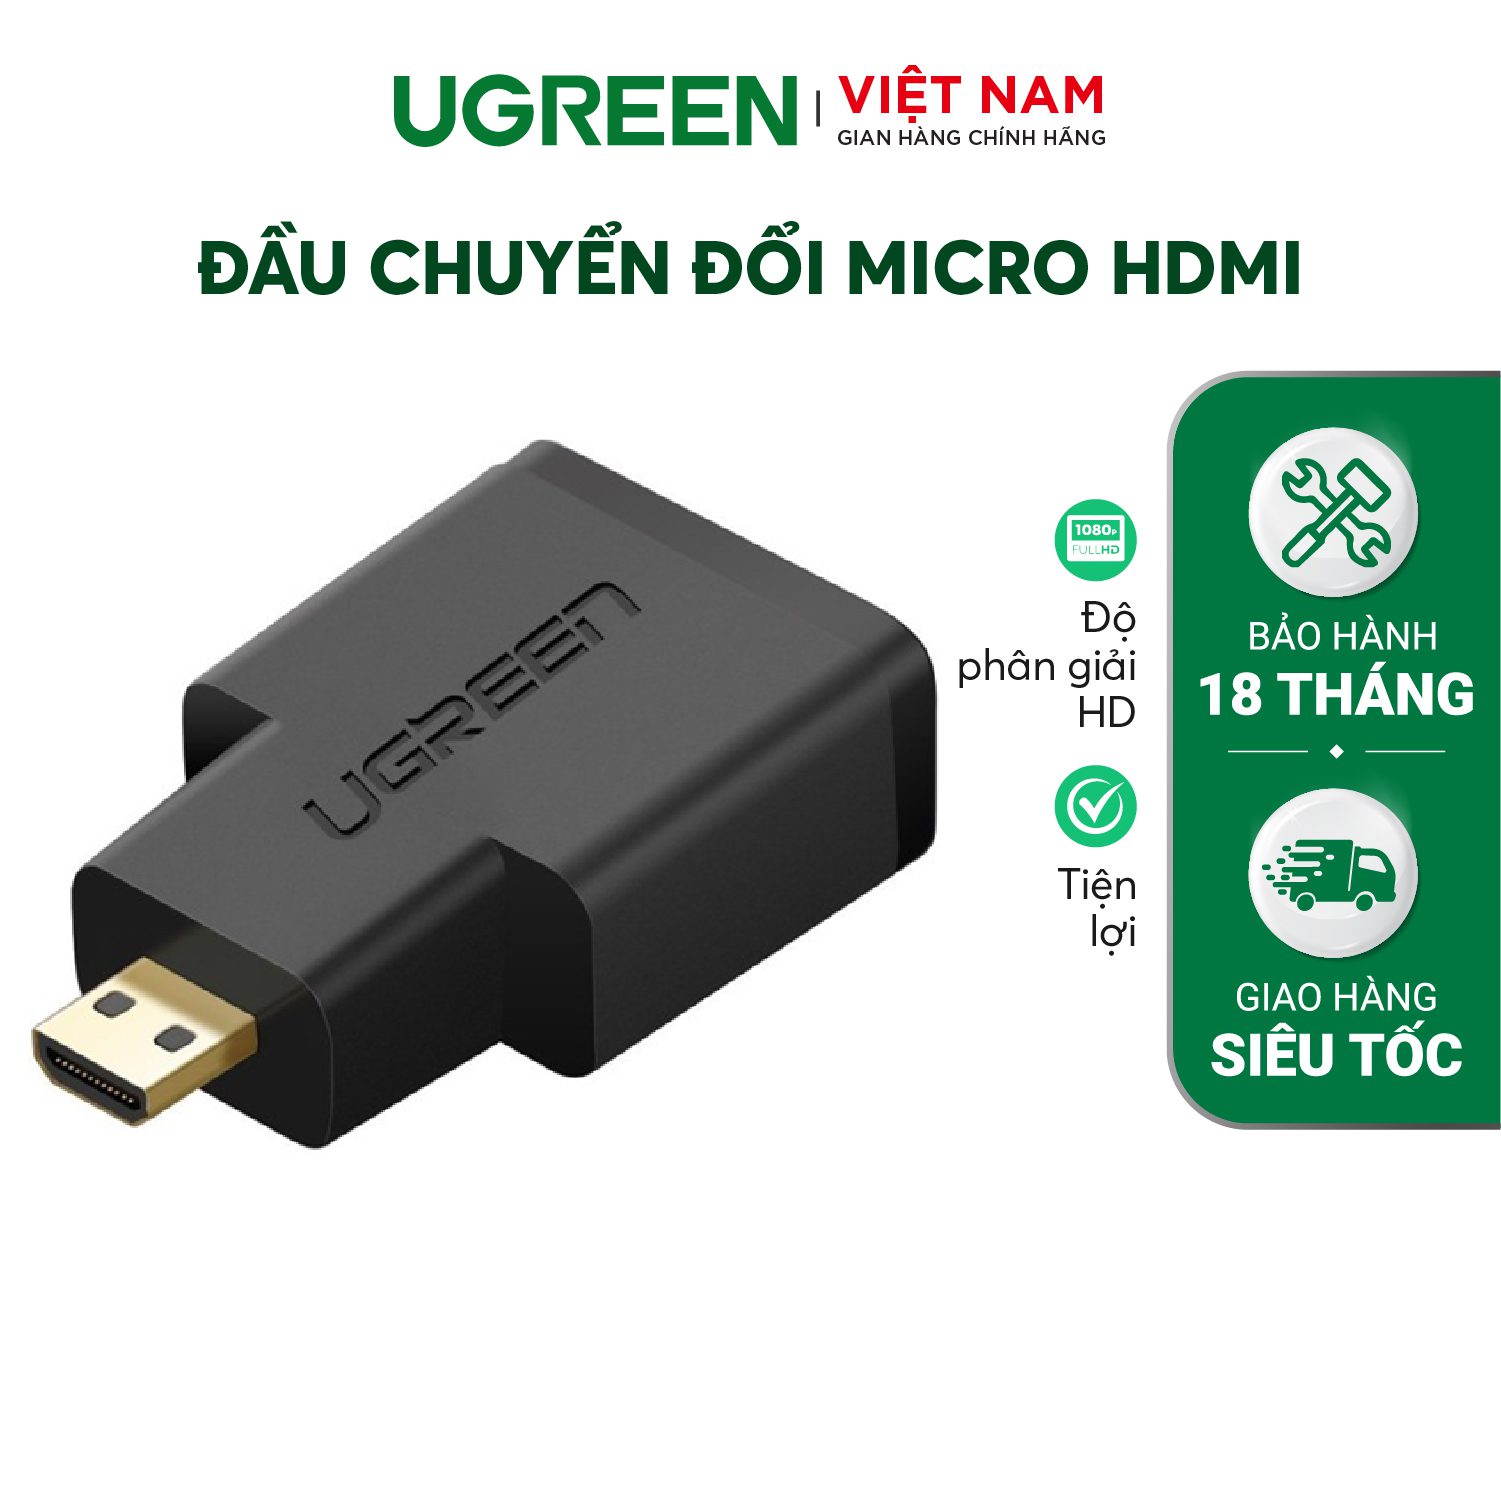 Đầu chuyển đổi micro HDMI (đực) sang HDMI (cái) UGREEN 20106. – Ugreen Việt Nam